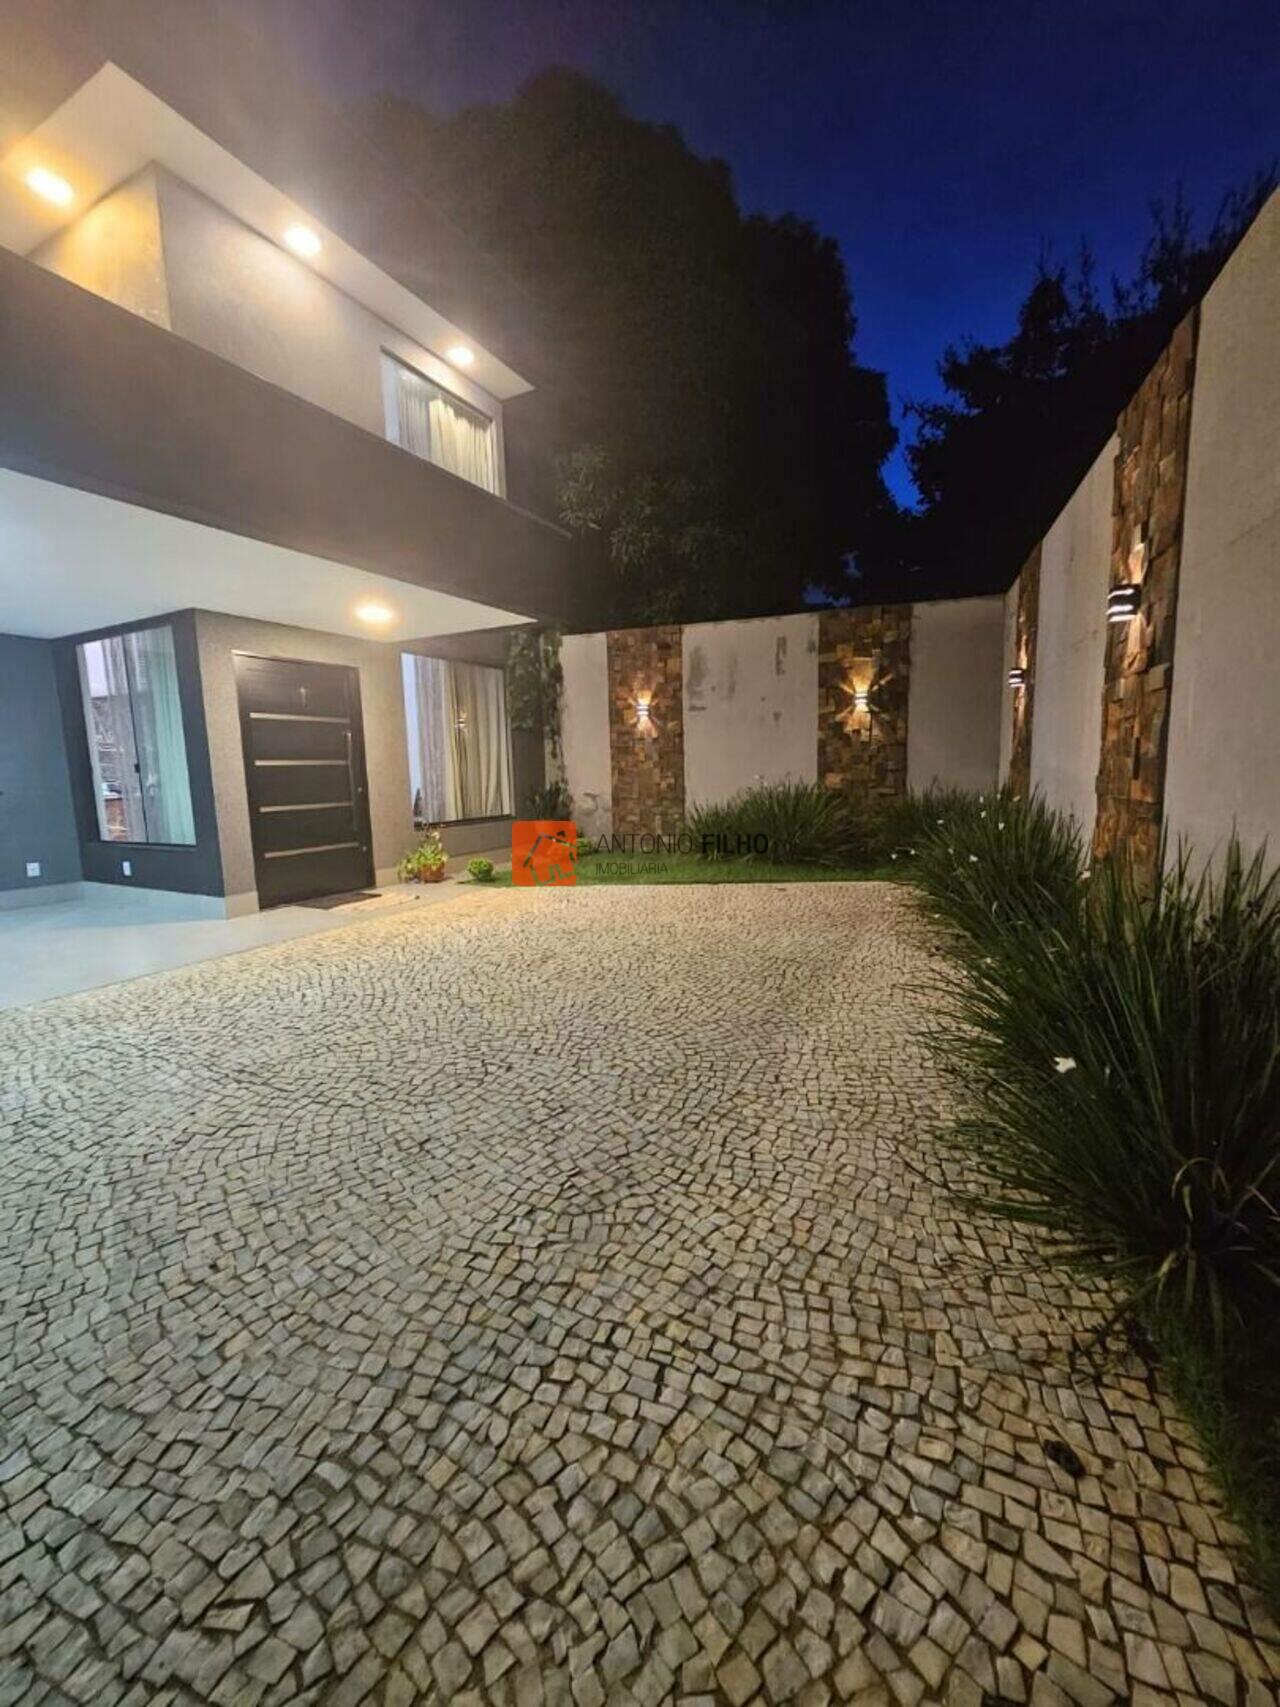 Casa Vicente Pires , Brasília - DF